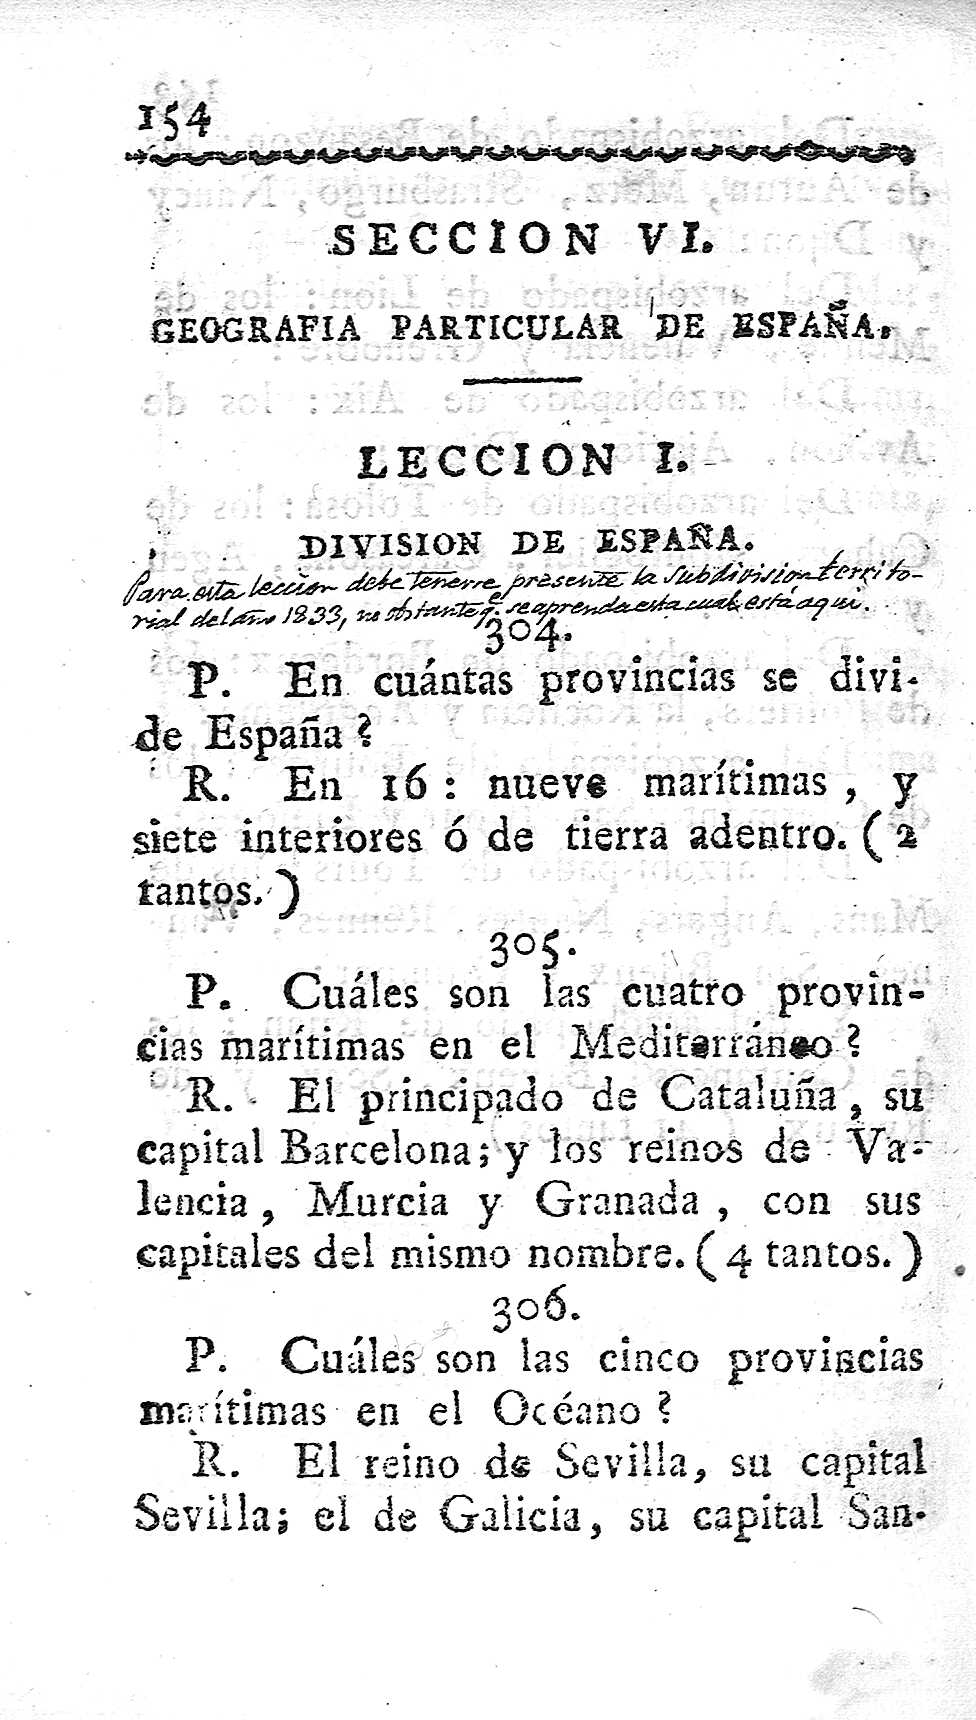 Seccion VI. Geografia particular de España. Leccion I. Division de España